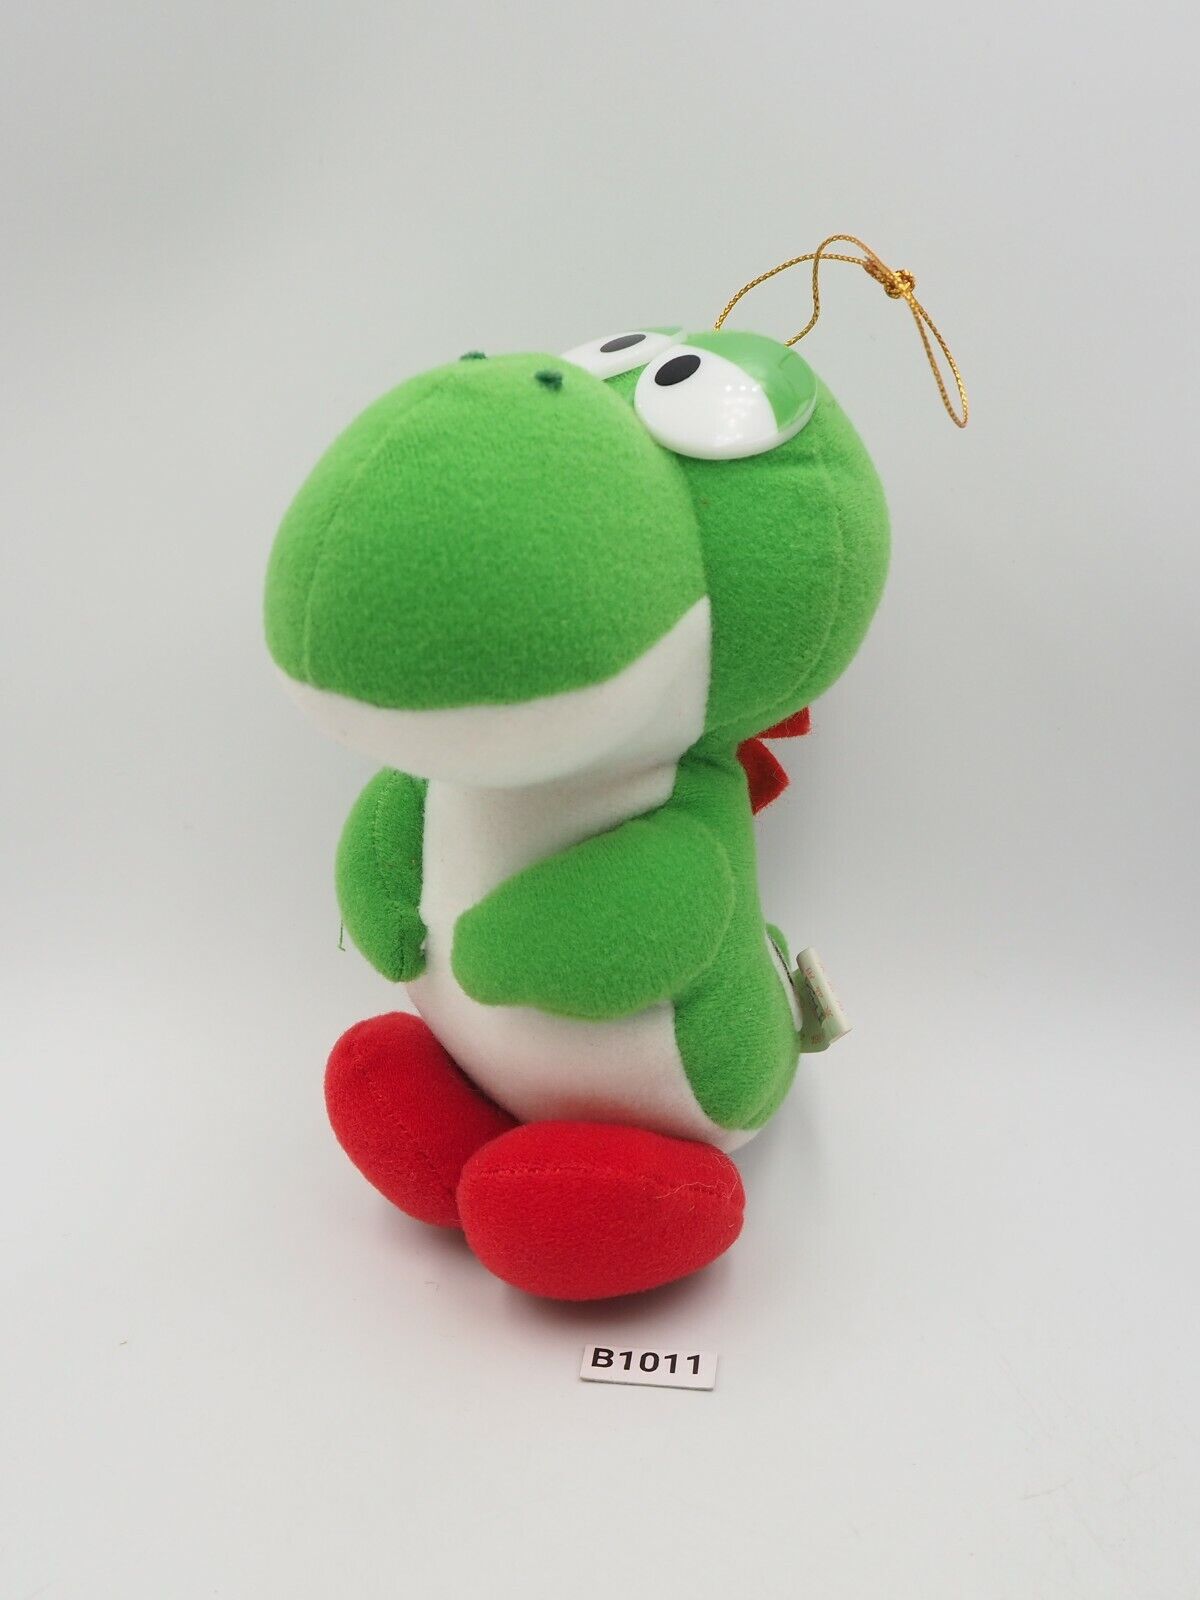 Yoshi Yossy B1011 Super Mario World Banpresto Plush 6